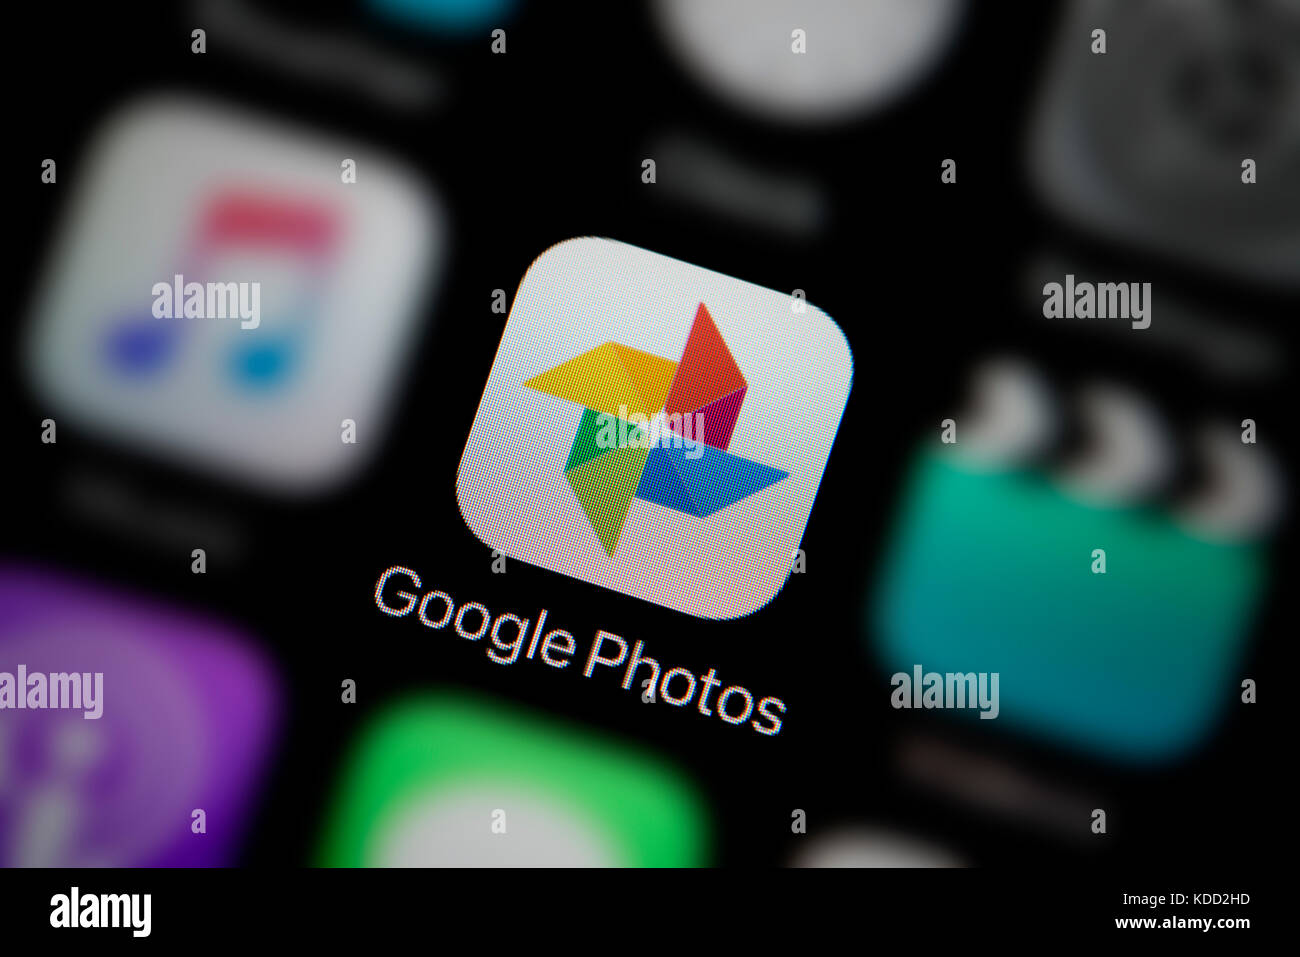 Un gros plan sur le logo représentant l'icône de l'app Photos Google, comme on le voit sur l'écran d'un téléphone intelligent (usage éditorial uniquement) Banque D'Images